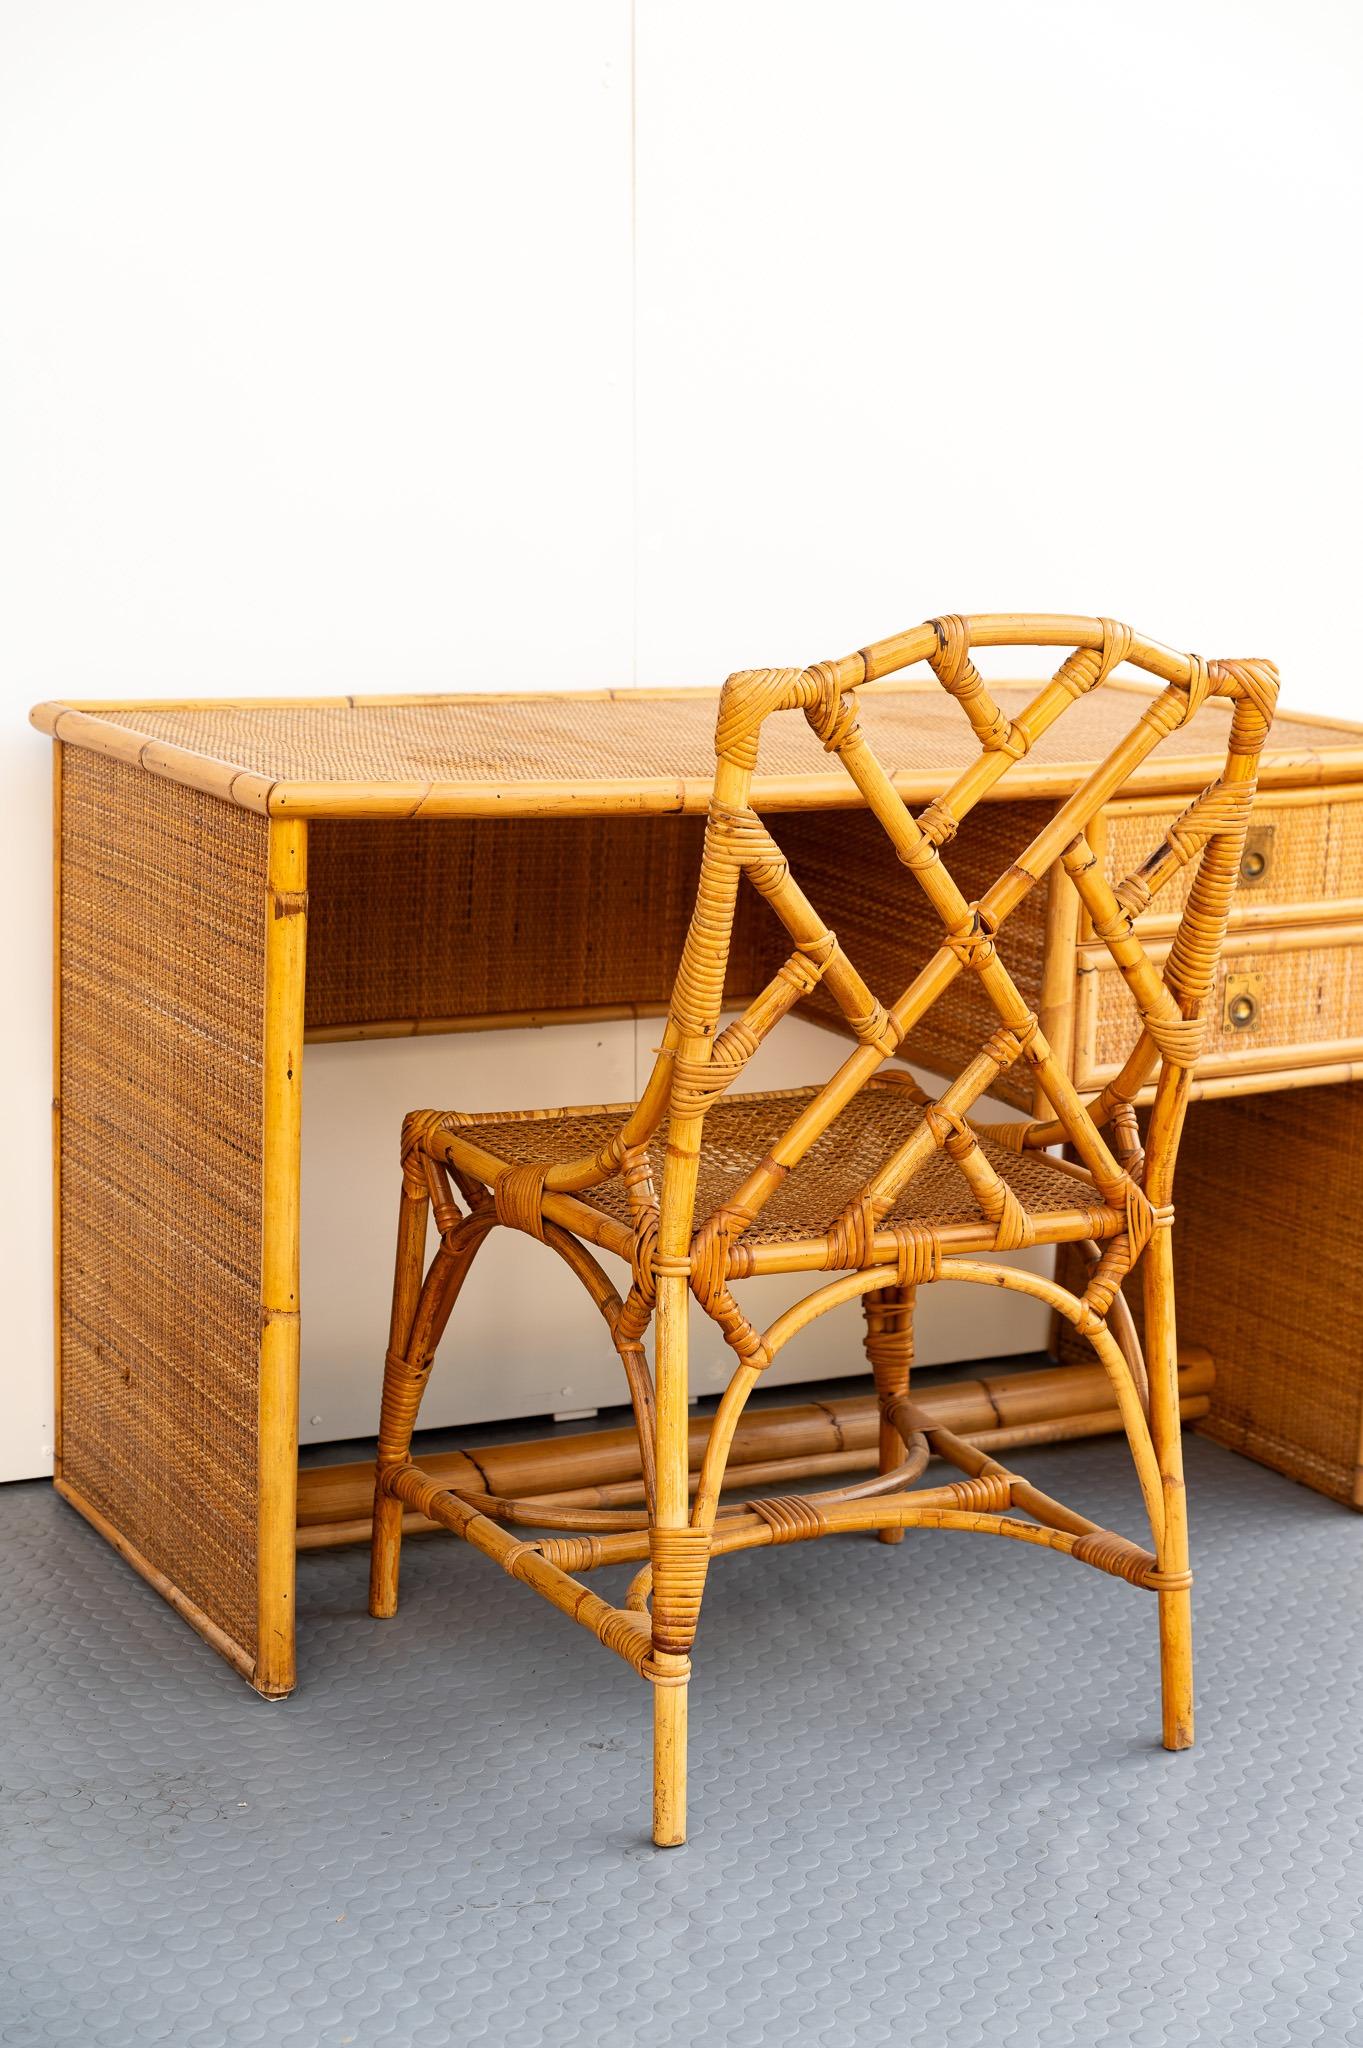 SCRIVANIA e SEDIA in bambù e vimini, Dal Vera, Anno 1960.  
La scrivania è in vimini con i bordi in bambù.  Questa scrivania può essere sia da centro che da parete, e può essere abbinata alla sedia Chippendale. 
La sedia Chippendale è in bambù e